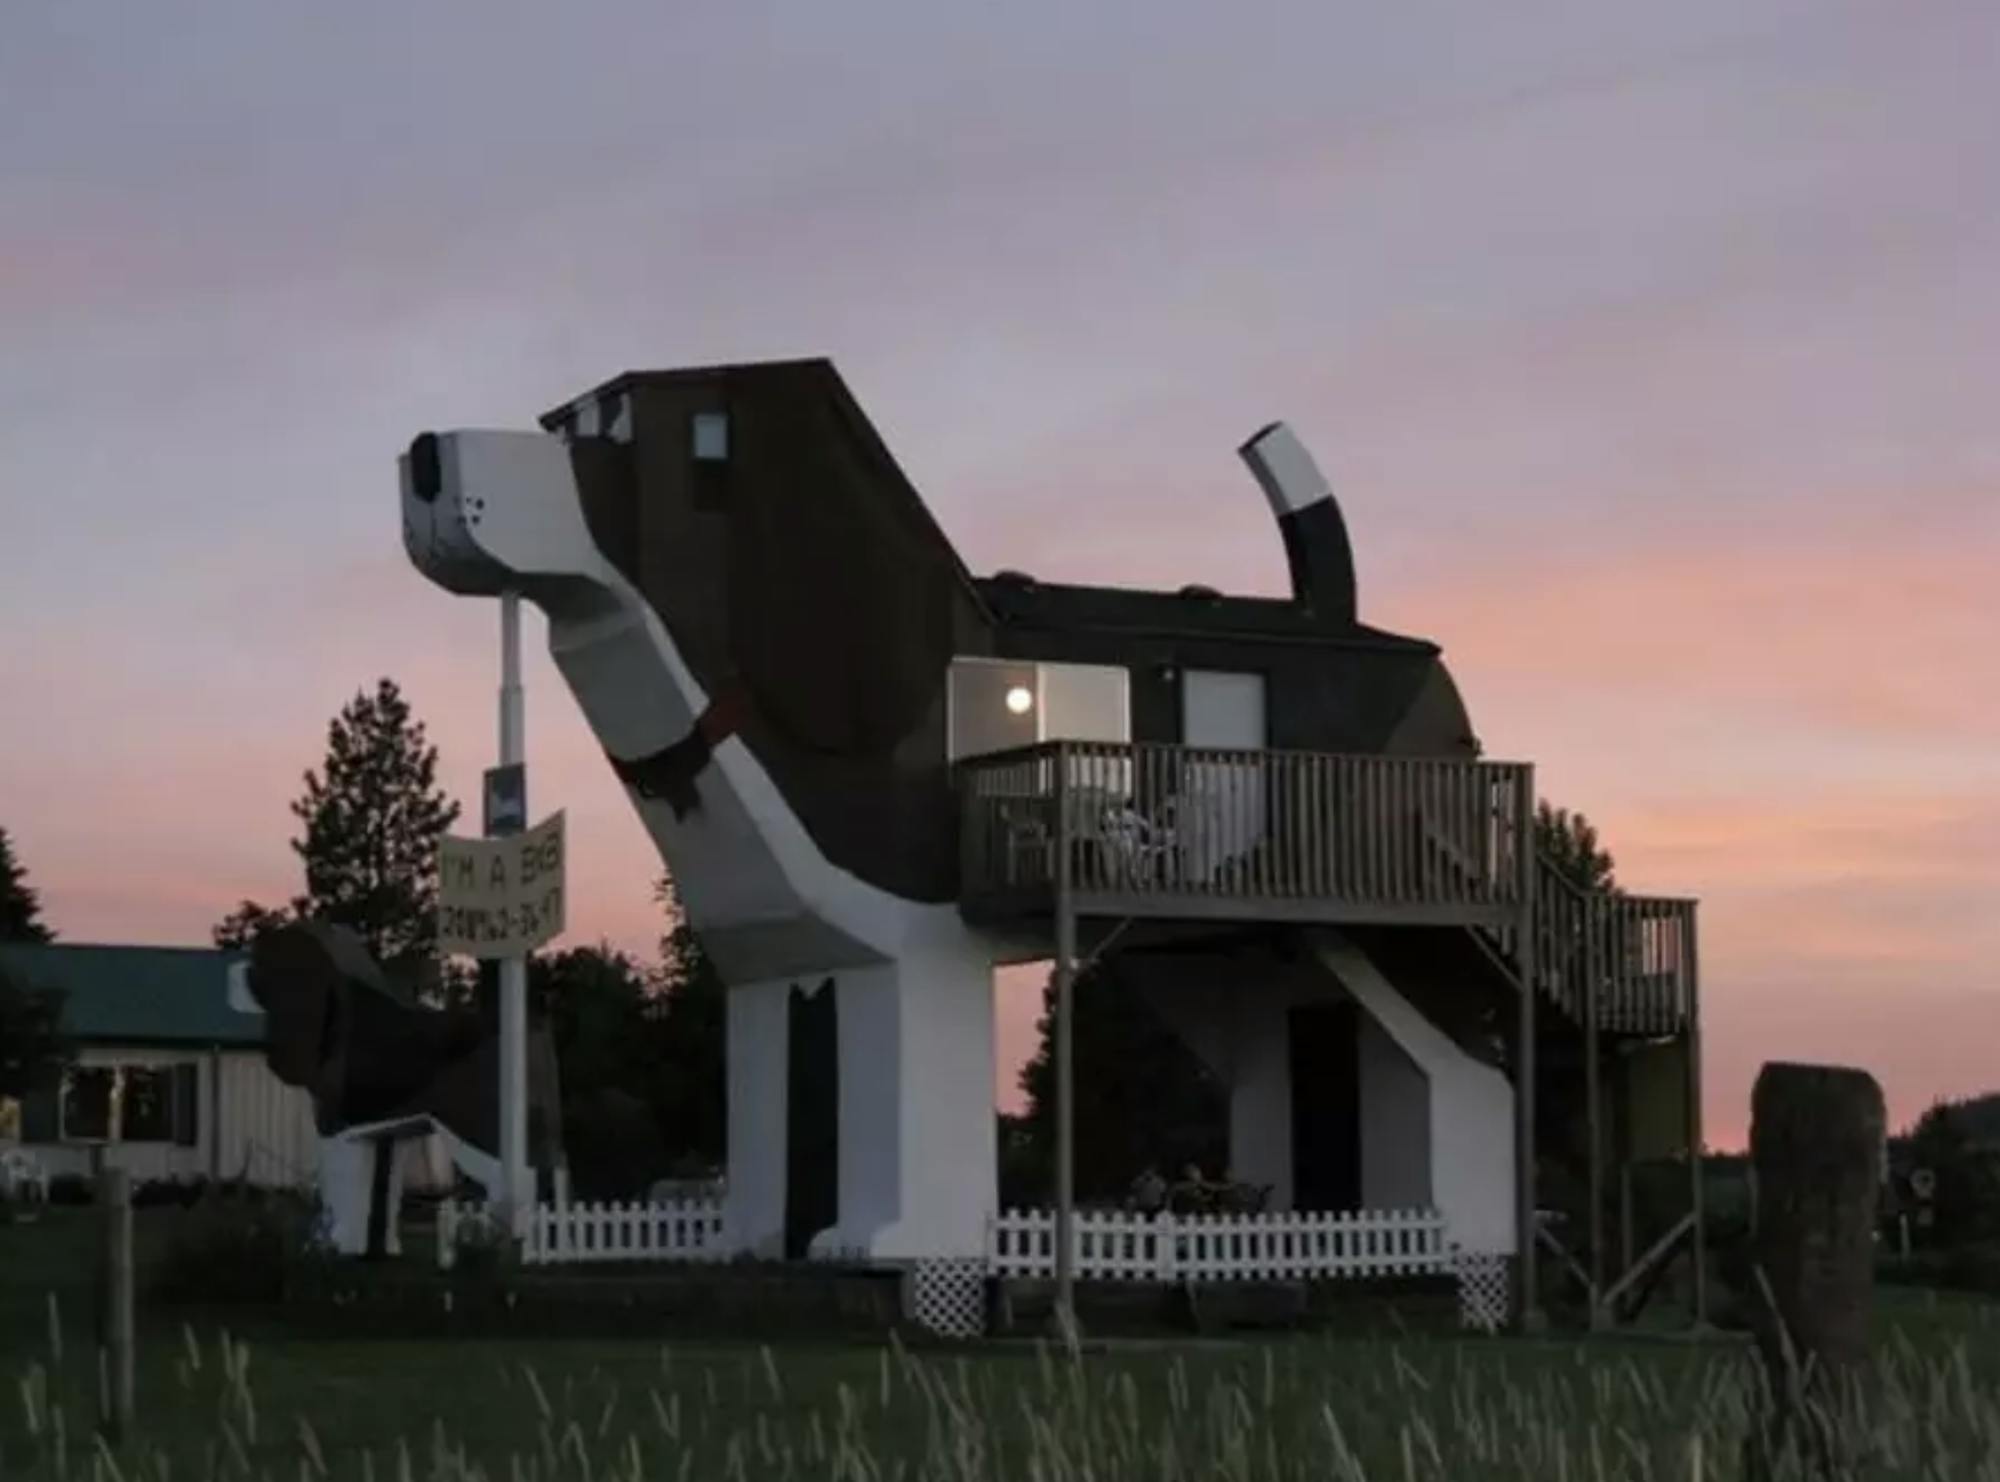 Das einstöckige Häuschen sieht aus wie ein überdimensionaler Hund. Aus dem Bauch des Hundes kommt ein Balkon zum Vorschein. 